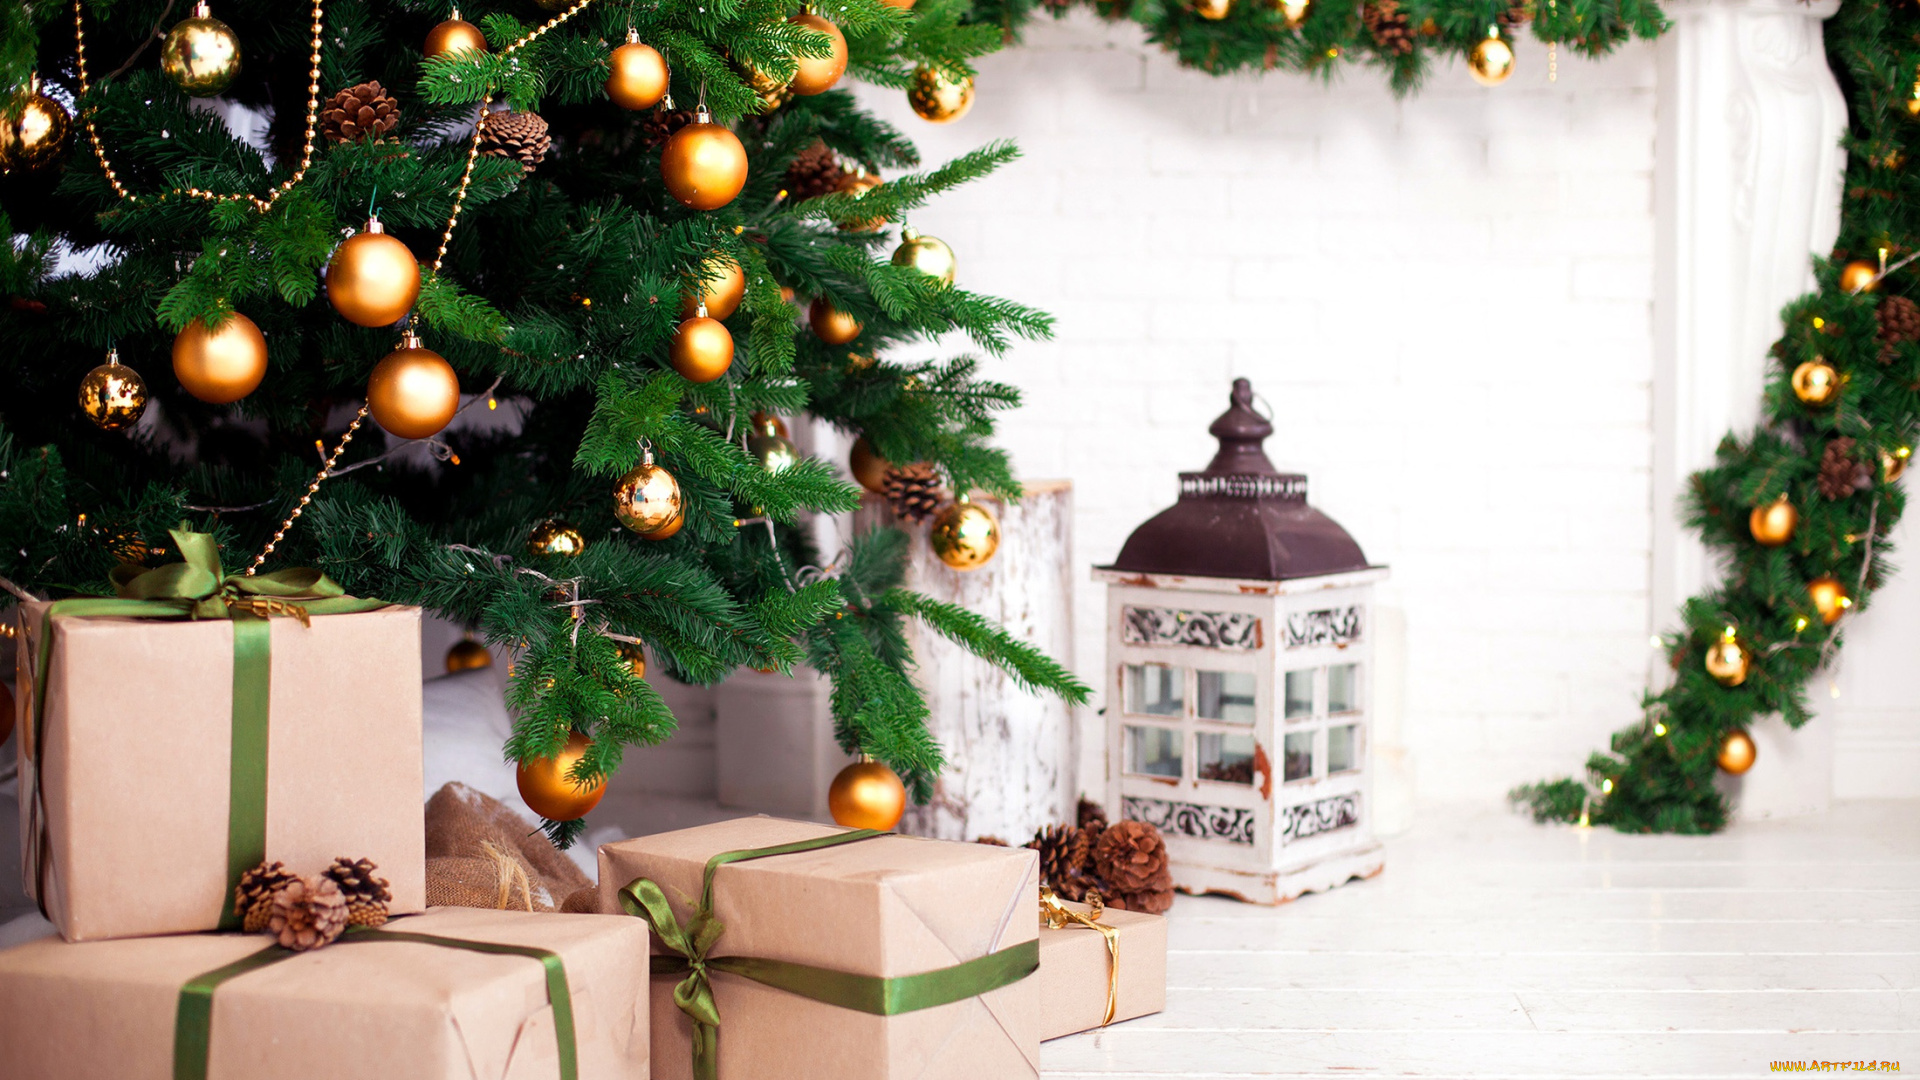 праздничные, подарки, и, коробочки, елка, новый, год, подарки, украшения, 2018, шишки, игрушки, шары, фонарь